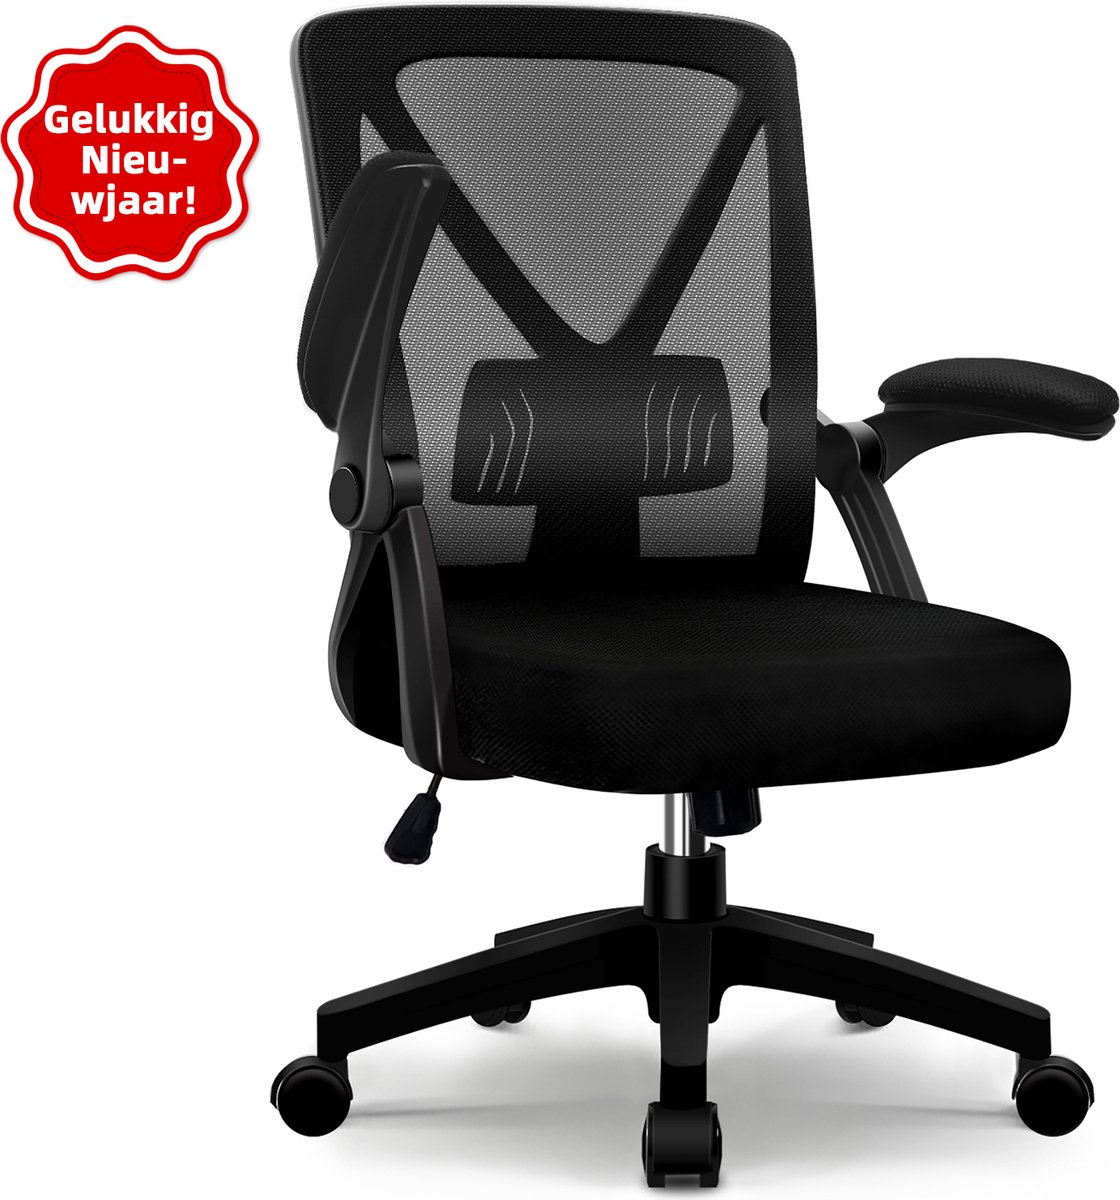 Elekiatech Chaise de Bureau Ergonomique HR20 - Chaise de Bureau